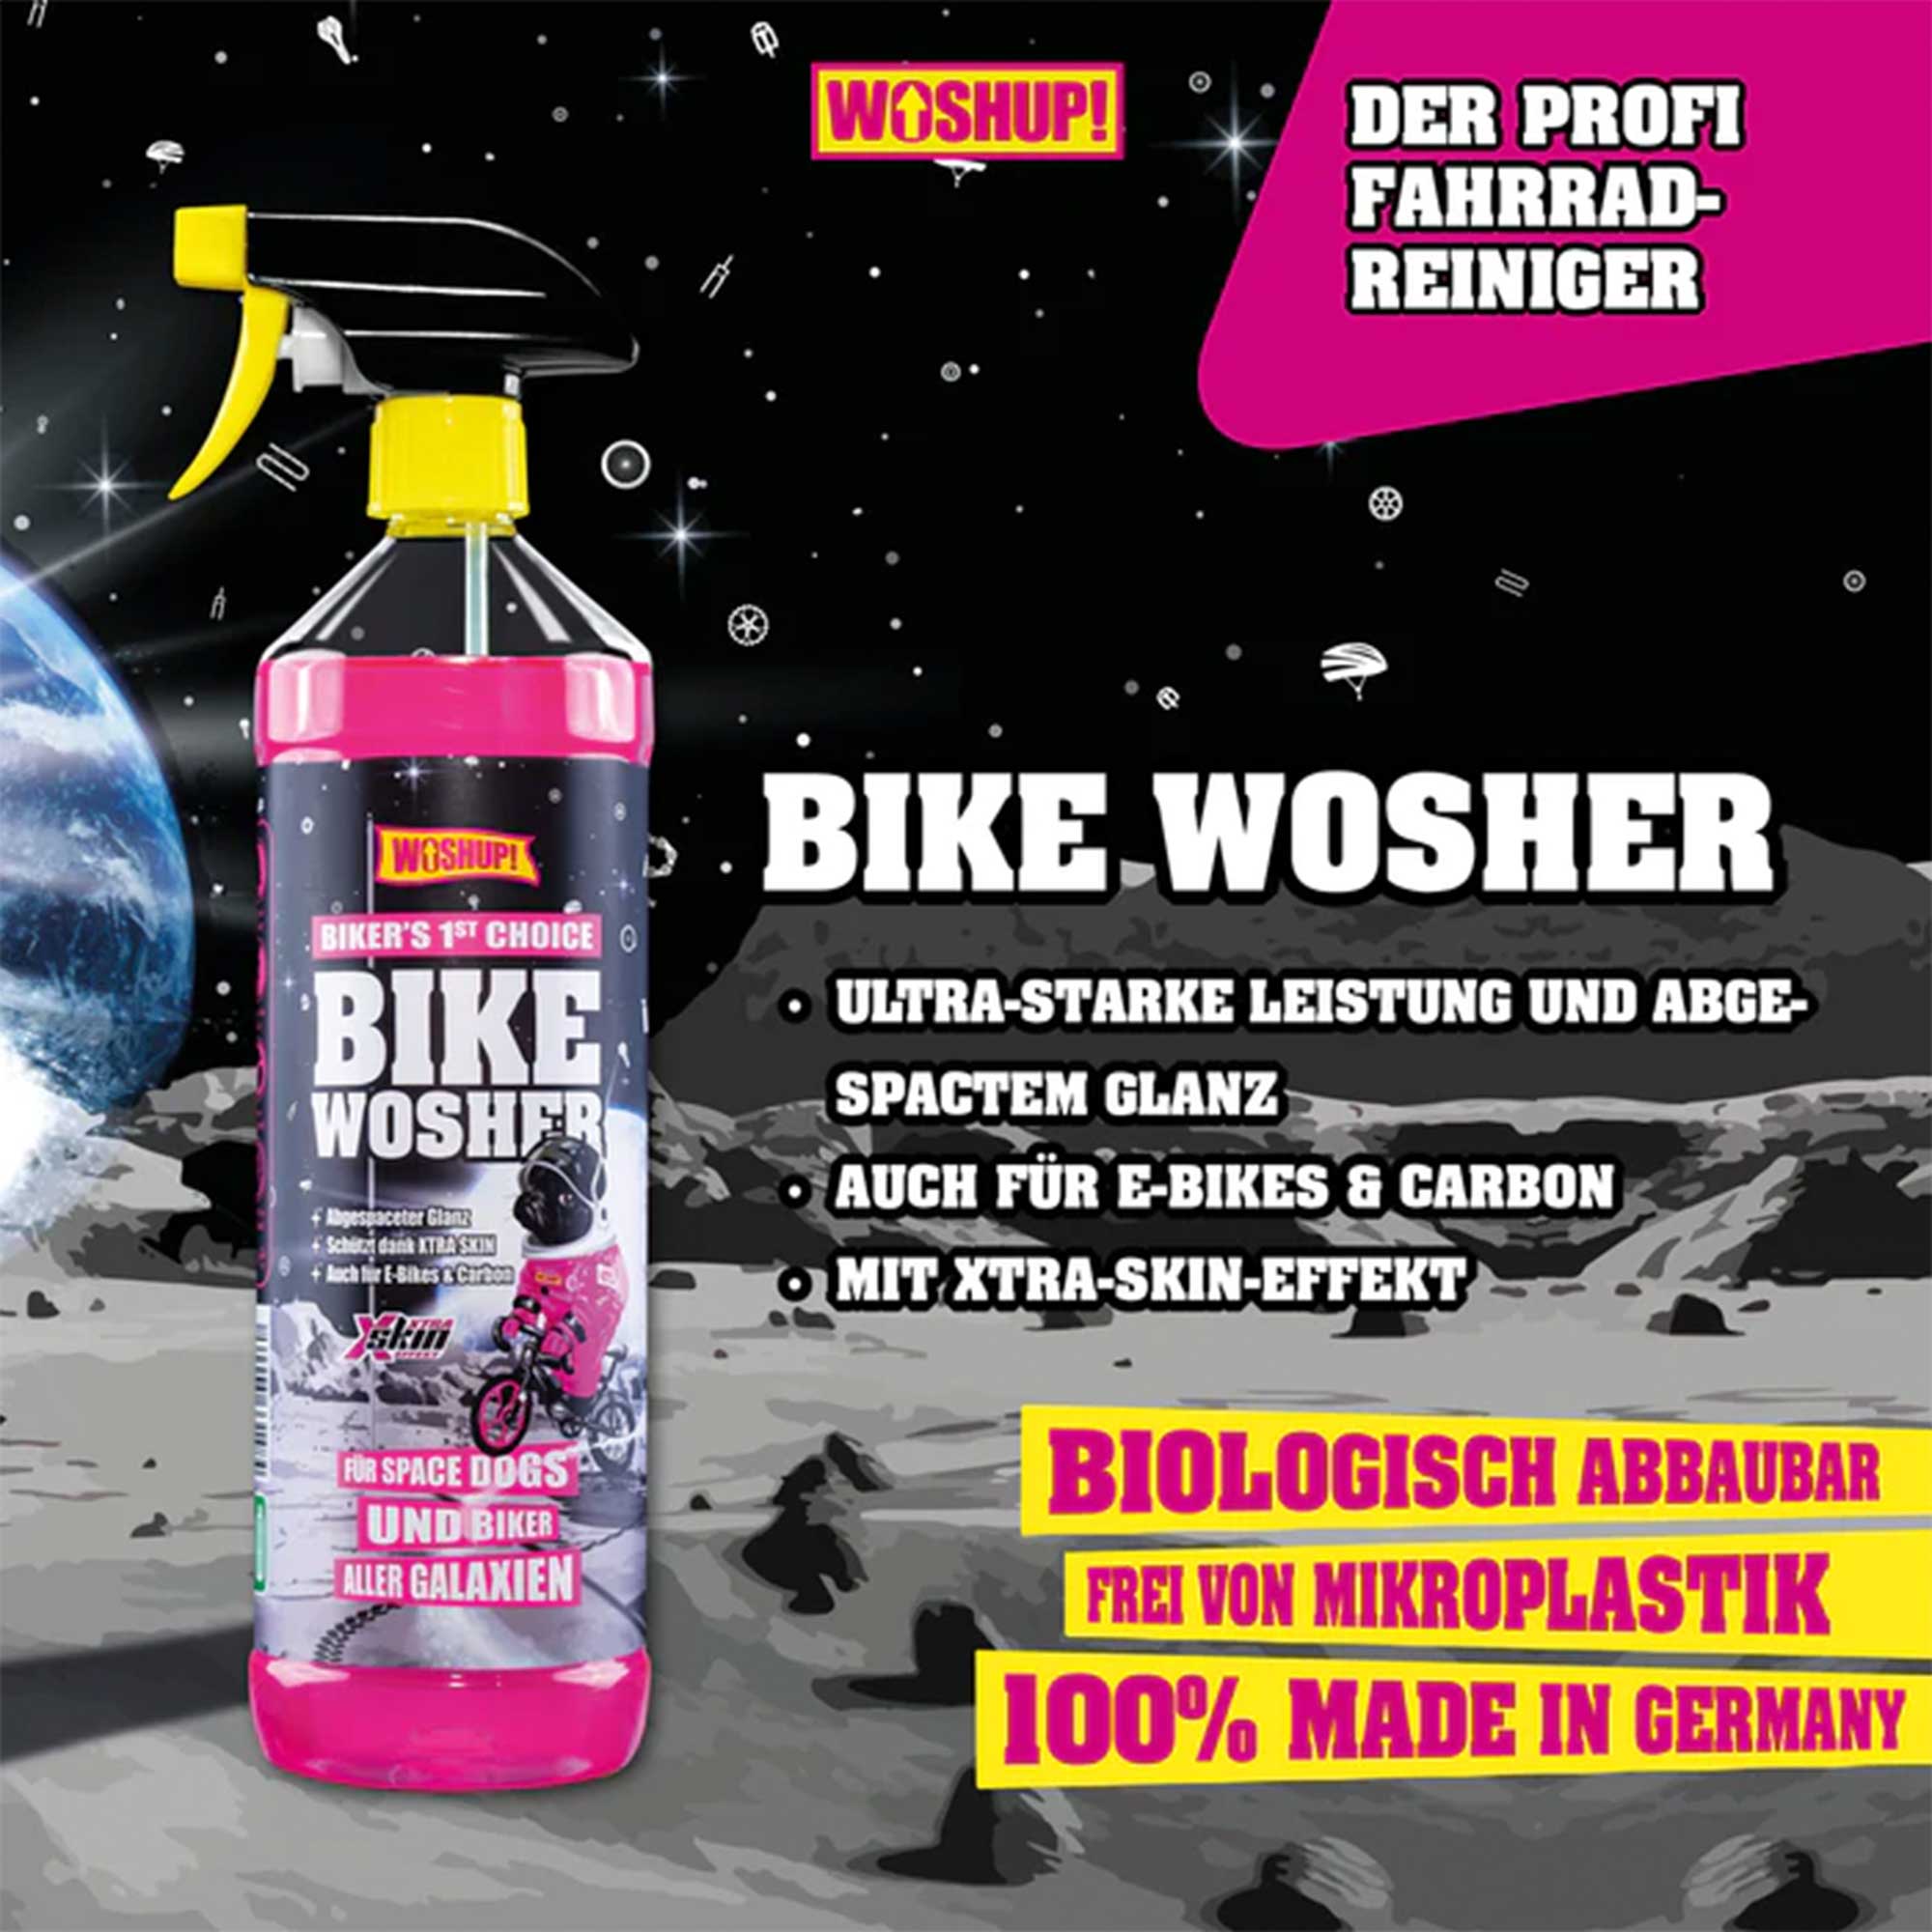 WOSHUP Bike Wosher Fahrradreiniger + Gratis Tuch !